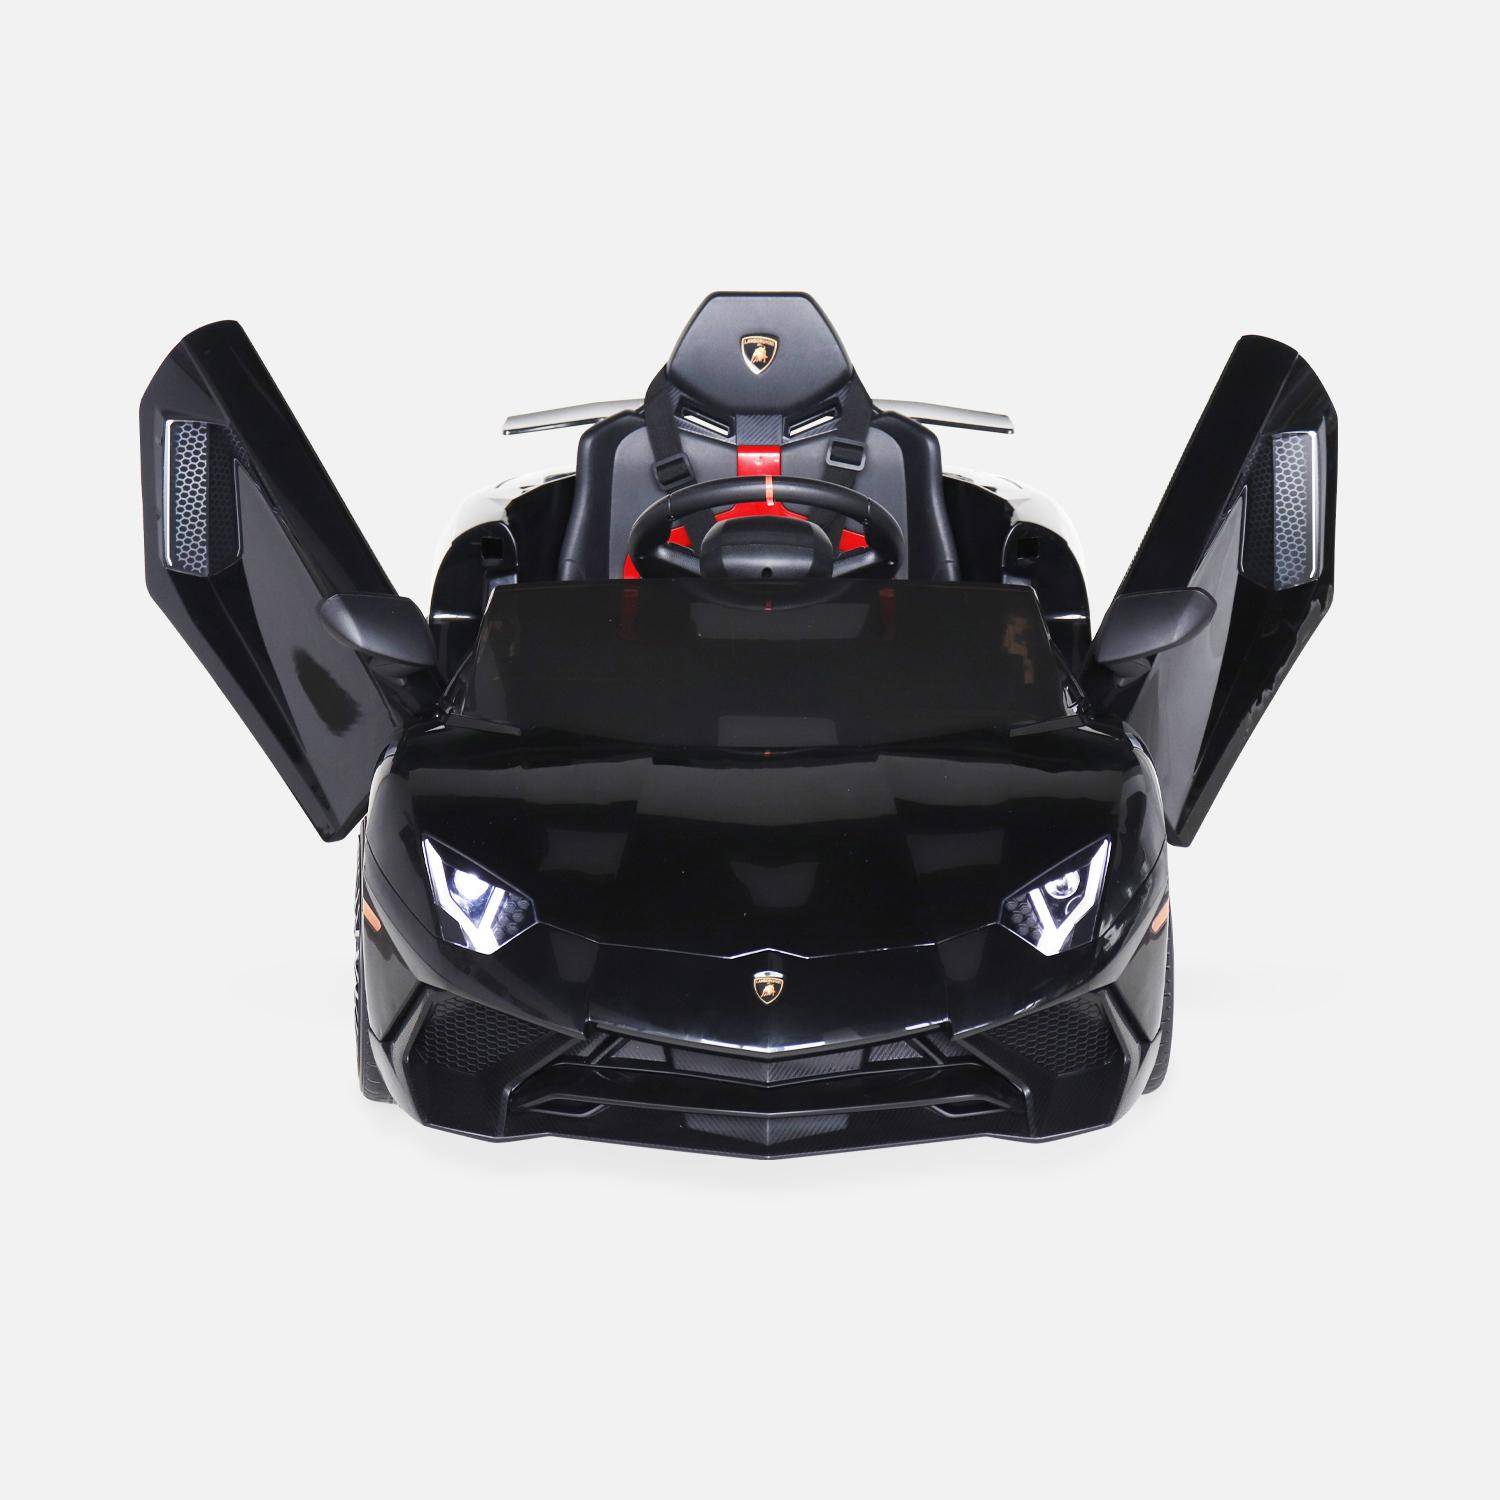 Voiture électrique 12V pour enfant Lamborghini, noir, 1 place, avec autoradio, télécommande, MP3, port USB et phares fonctionnels,sweeek,Photo6